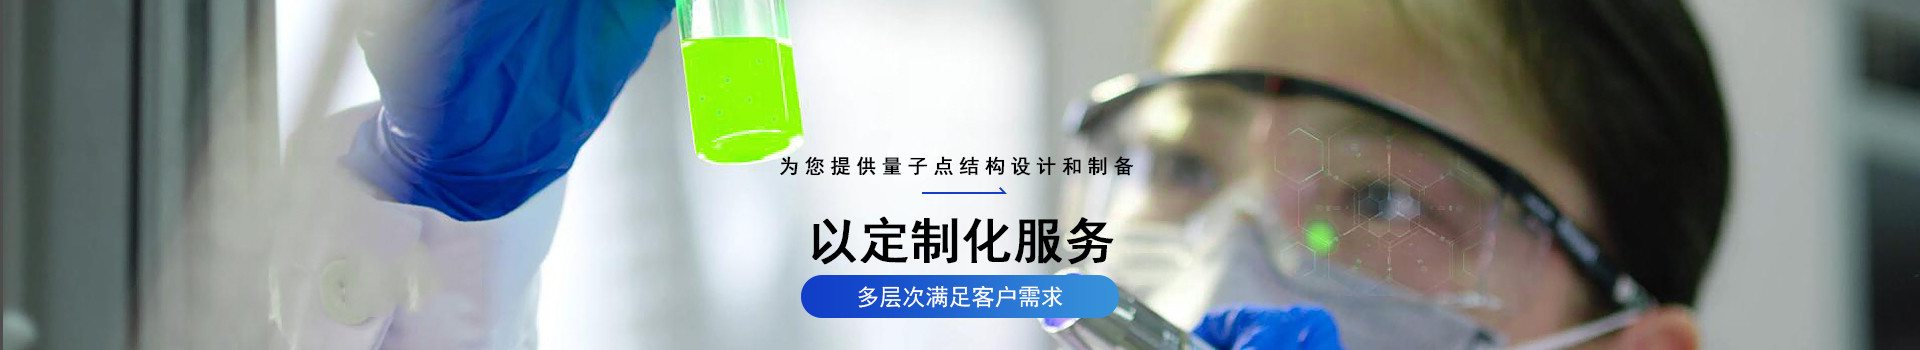 星烁纳米成功助力中国显示&照明行业技术转型升级